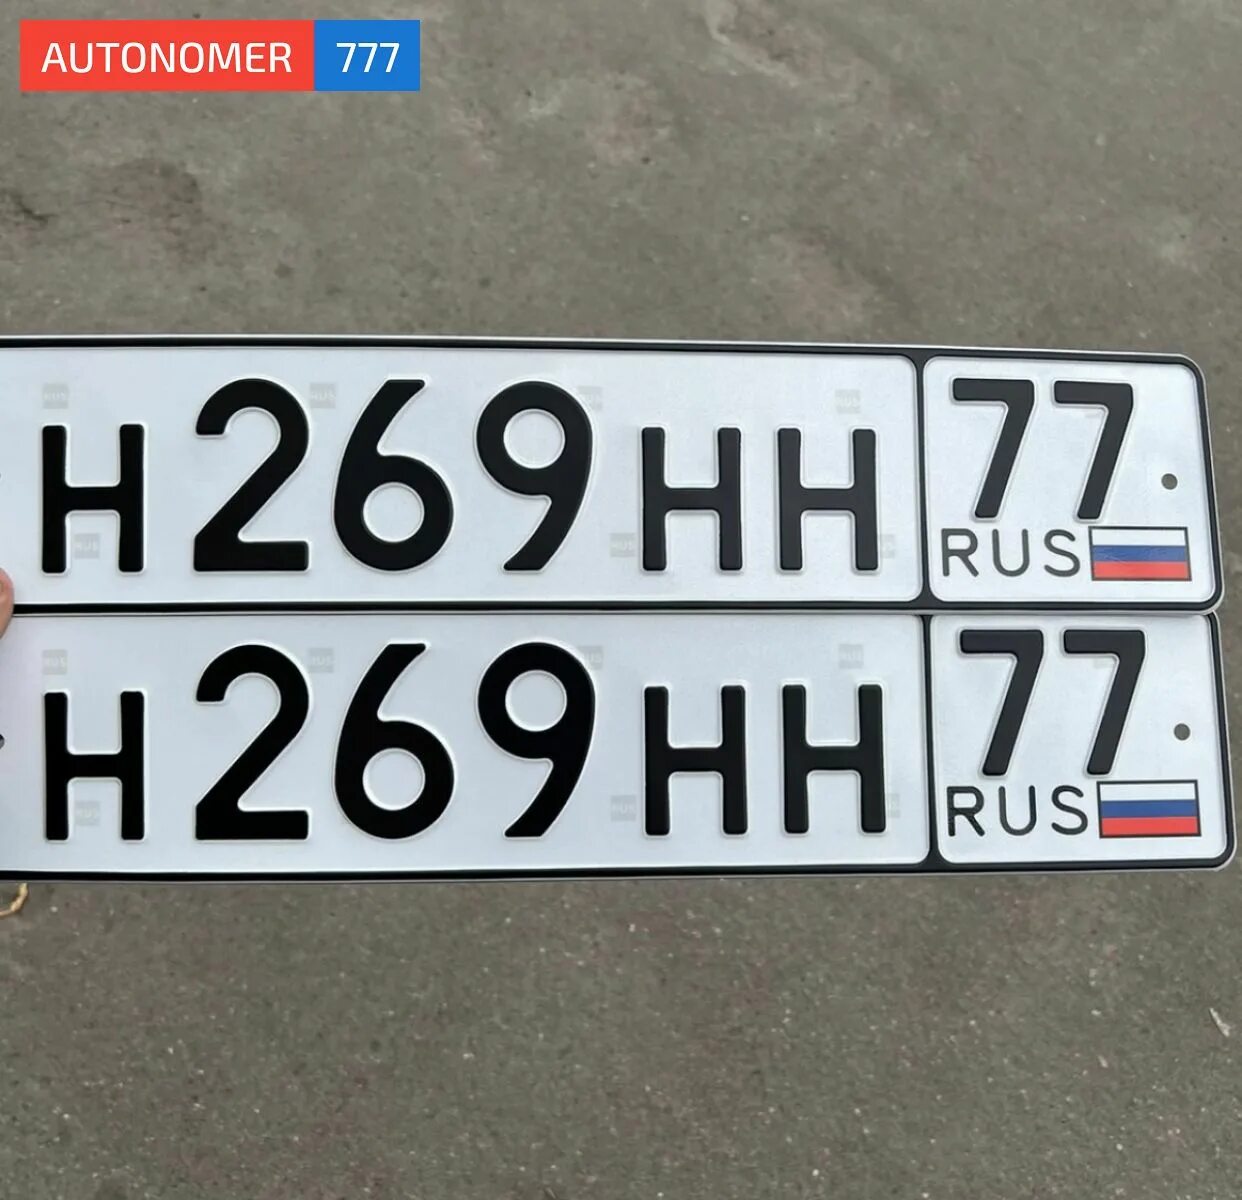 Номер автомобиля купить в москве. Автомобильный номерной знак. Гос номер авто. Красивые номера на машину. Красивые автономера.